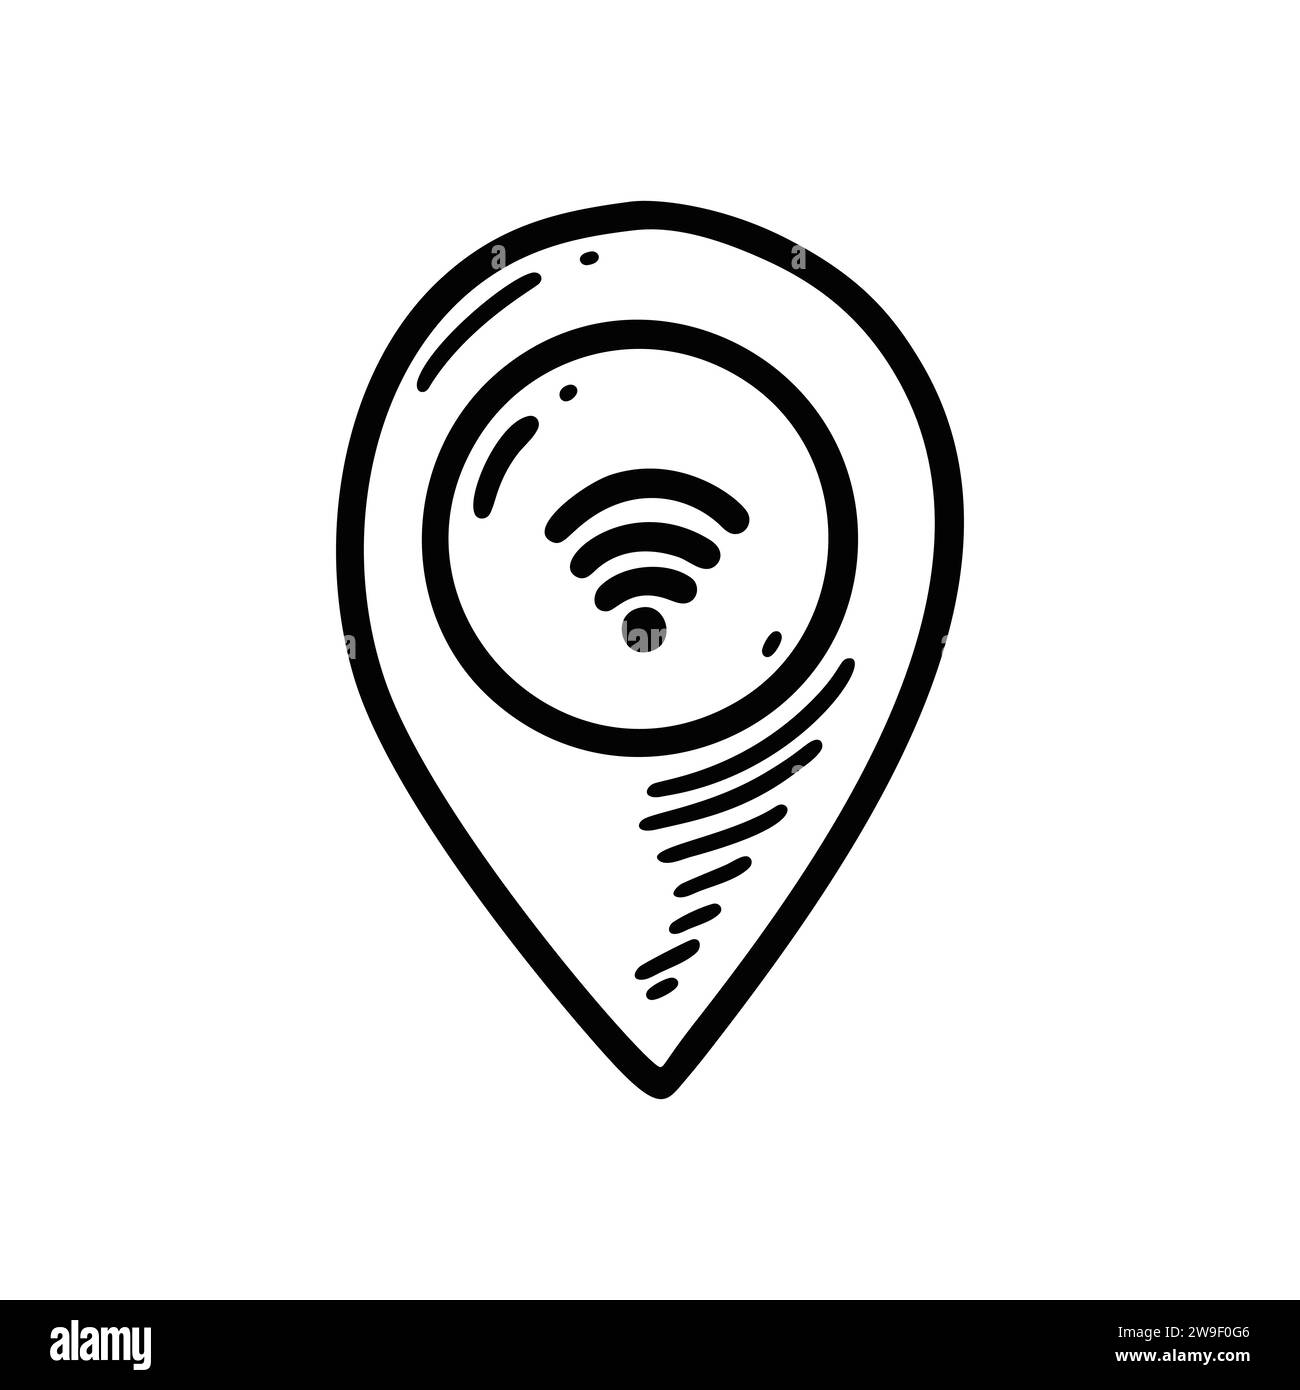 Icona posizione wi-fi Doodle. Connessione Internet wireless via satellite. Disegnare il simbolo del segnale radio. Pin della mappa disegnato a mano. Illustrazione Vettoriale